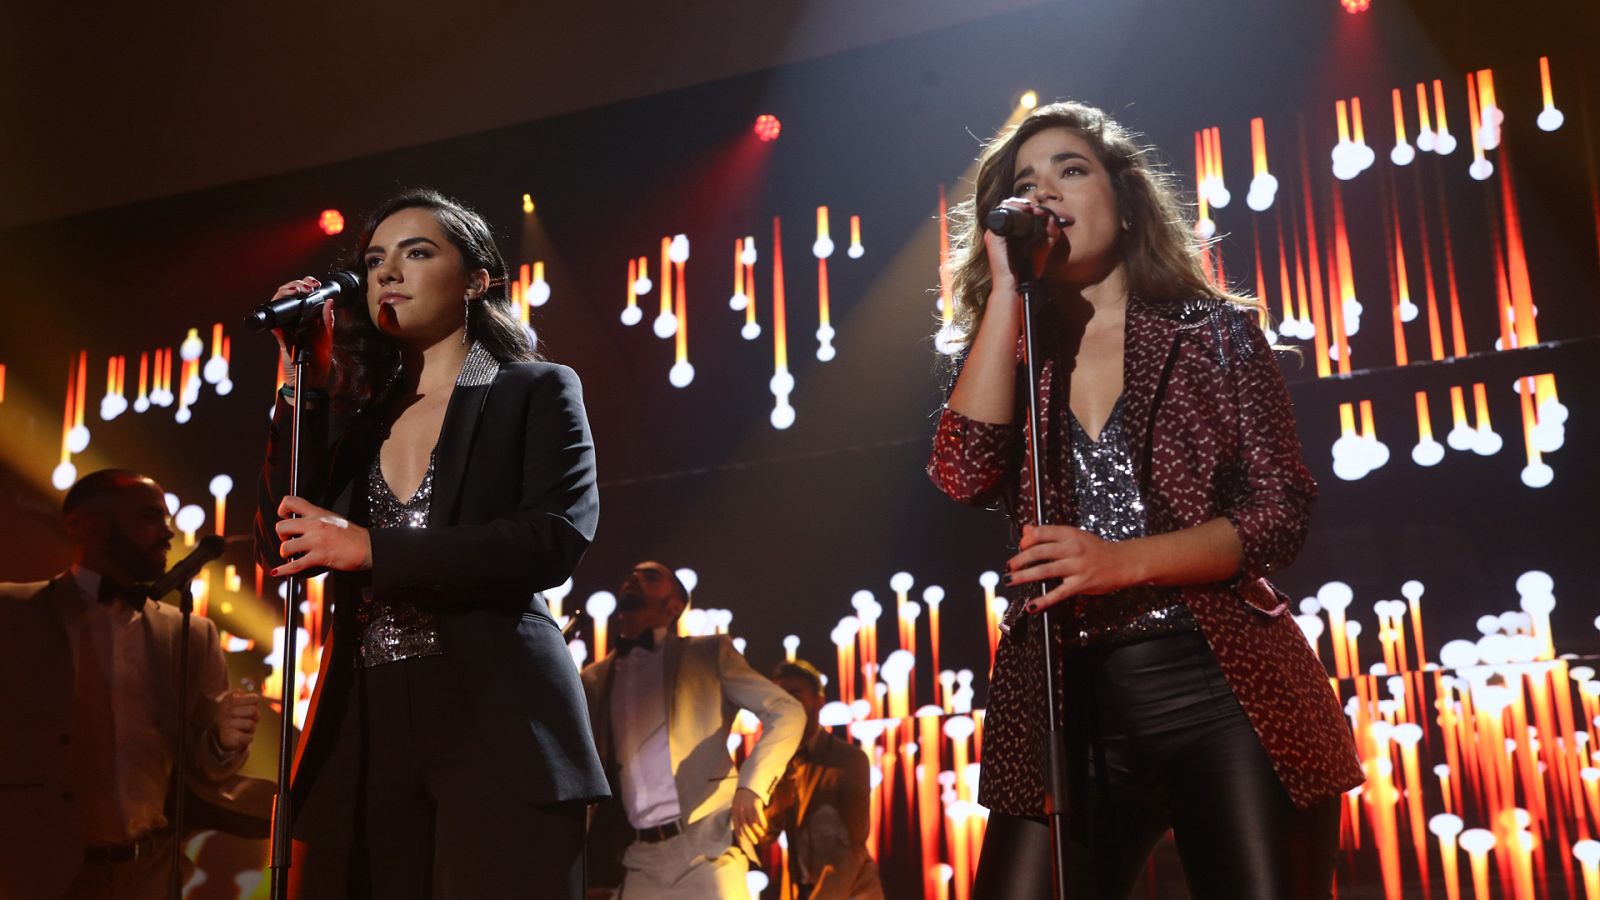 OT 2018: Gala 7 - Marta y Julia cantan "Love on top" en la gala 7